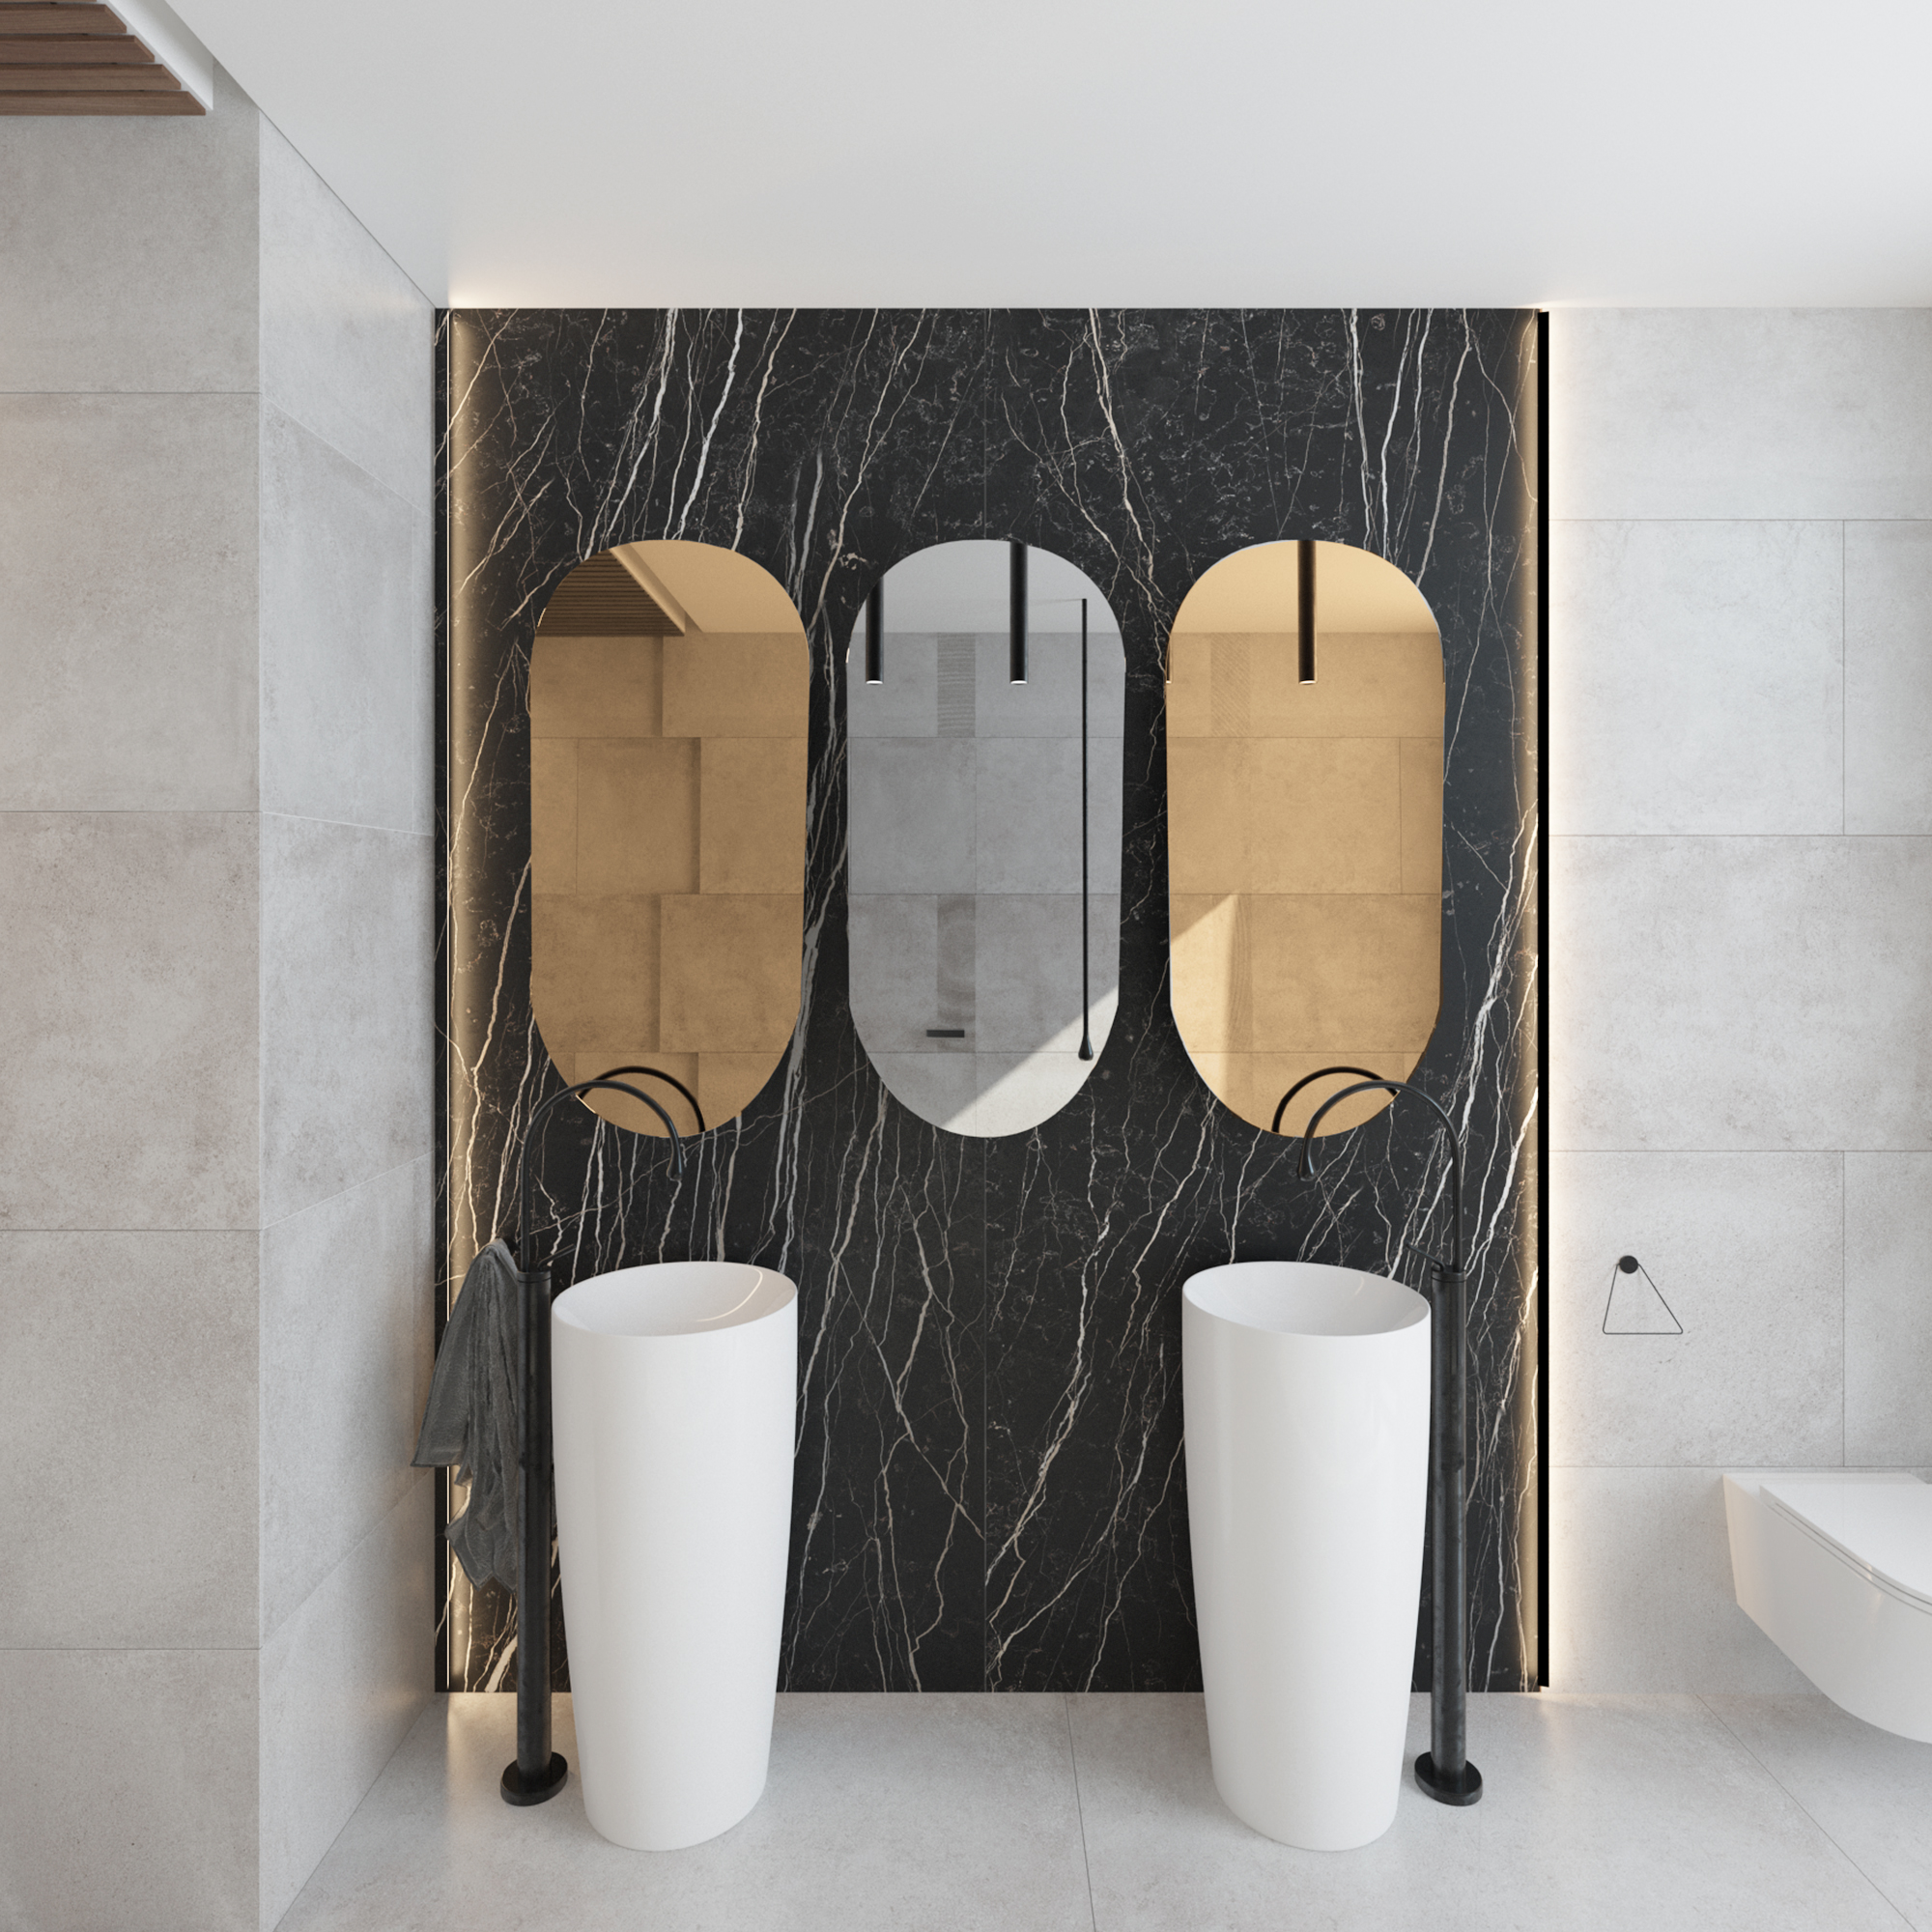 TRINIDÀD - Specchi Ovali Eleganti per salotto e bagno, RoyalGlass